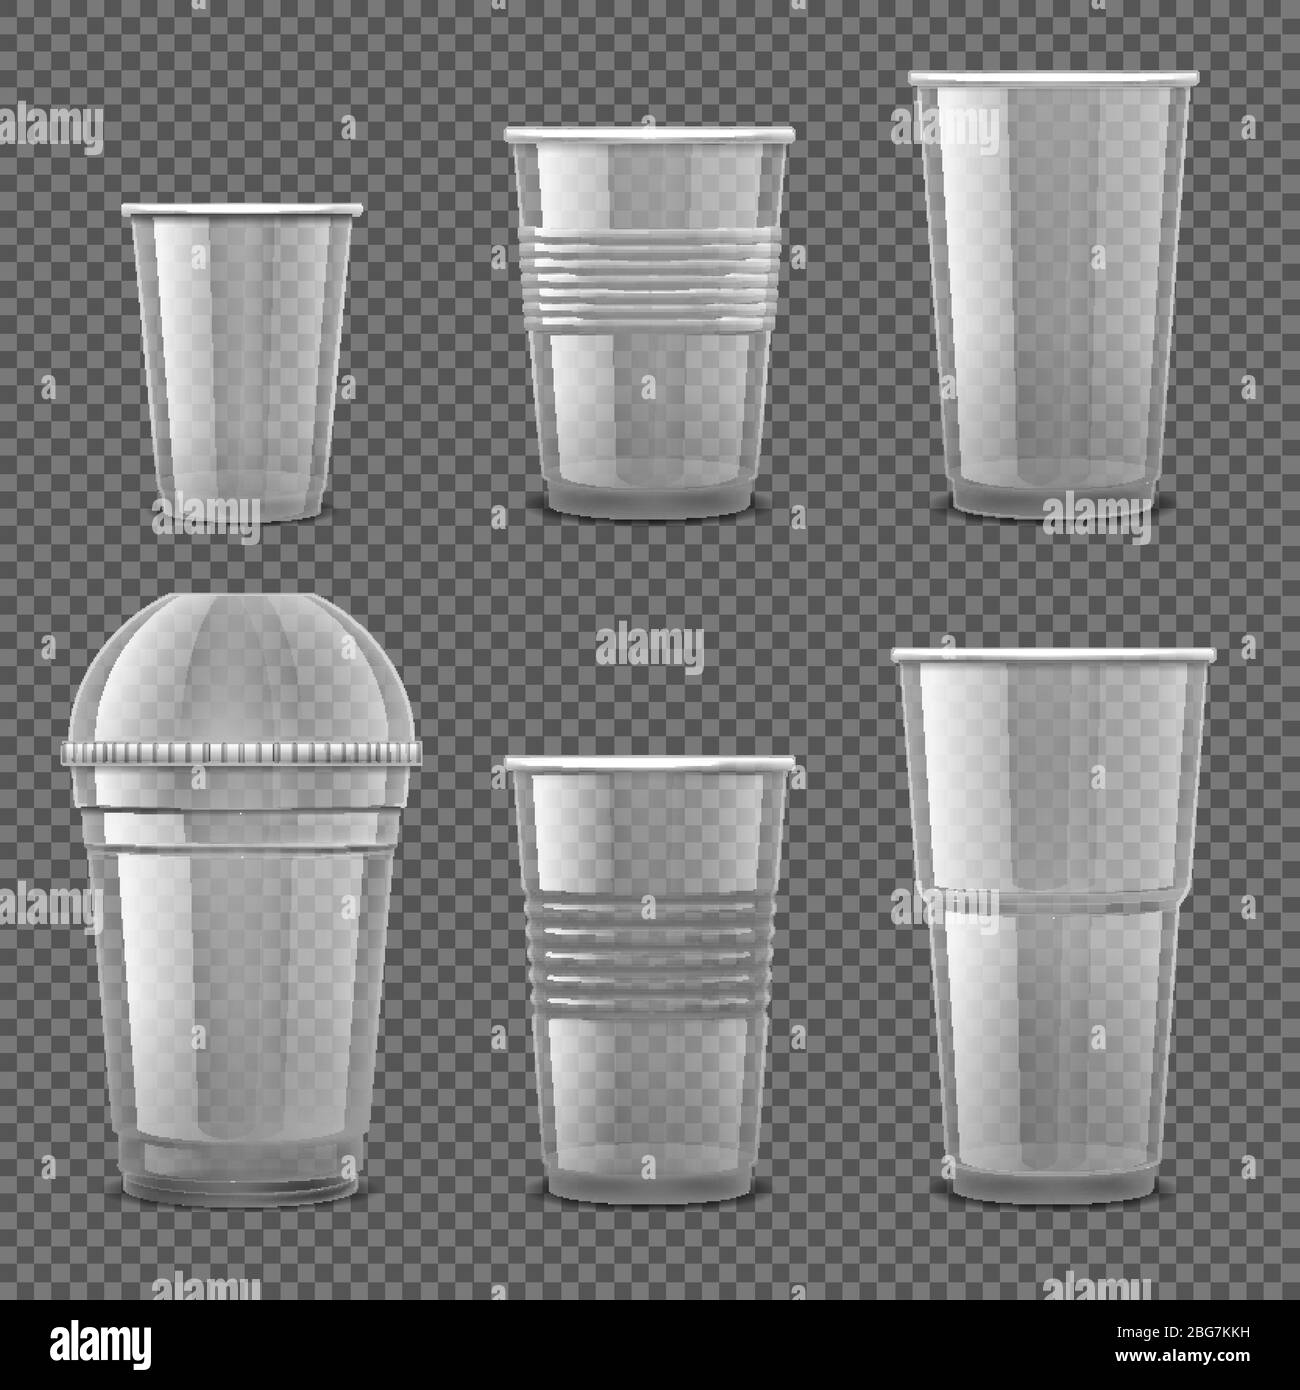 Vasos desechables de plástico transparente vacíos. Recipientes